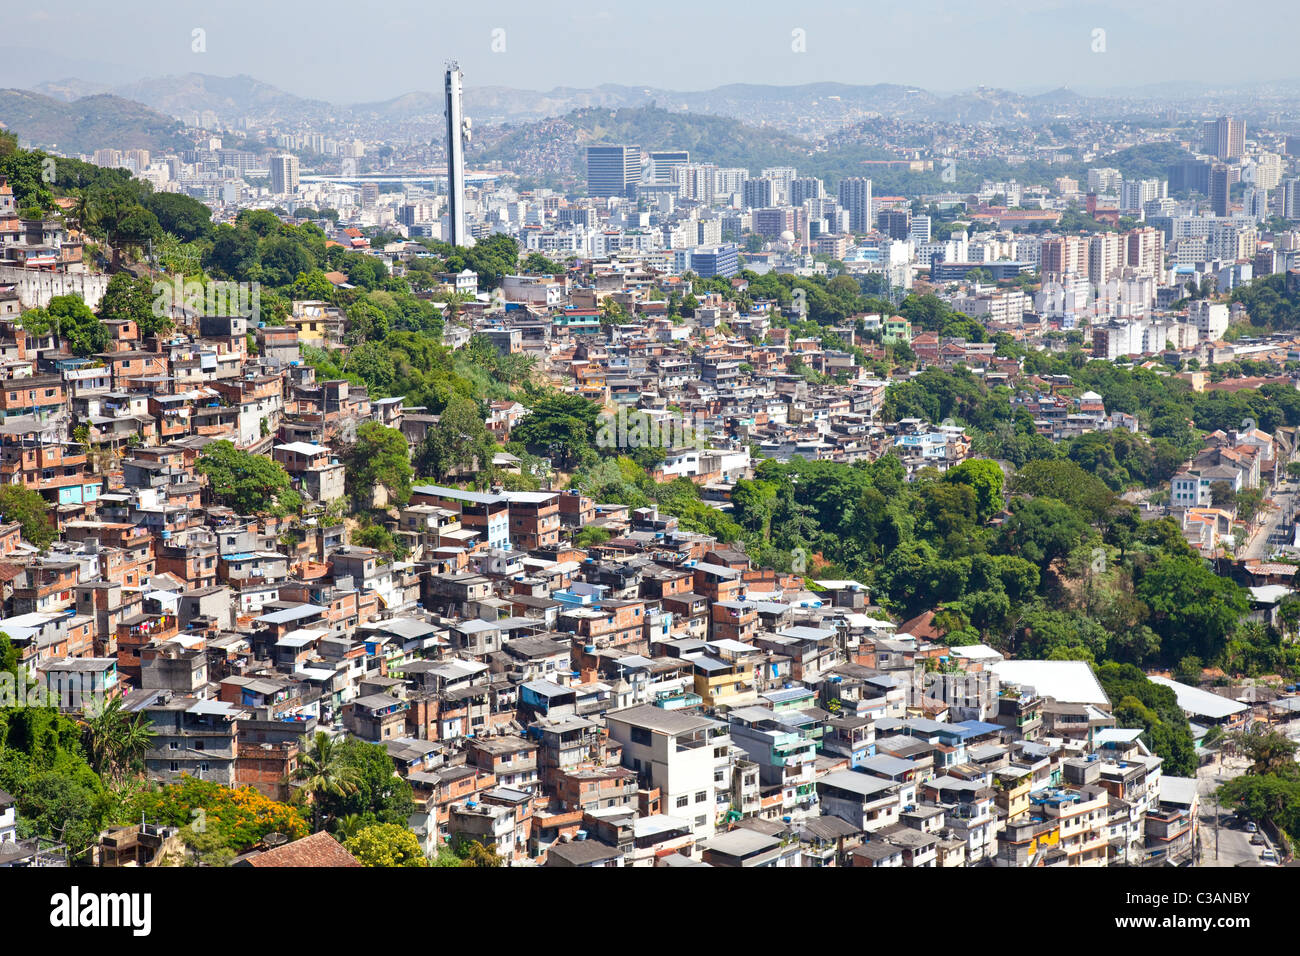 Favelas or slums in Rio de Janeiro, Brazil Stock Photo